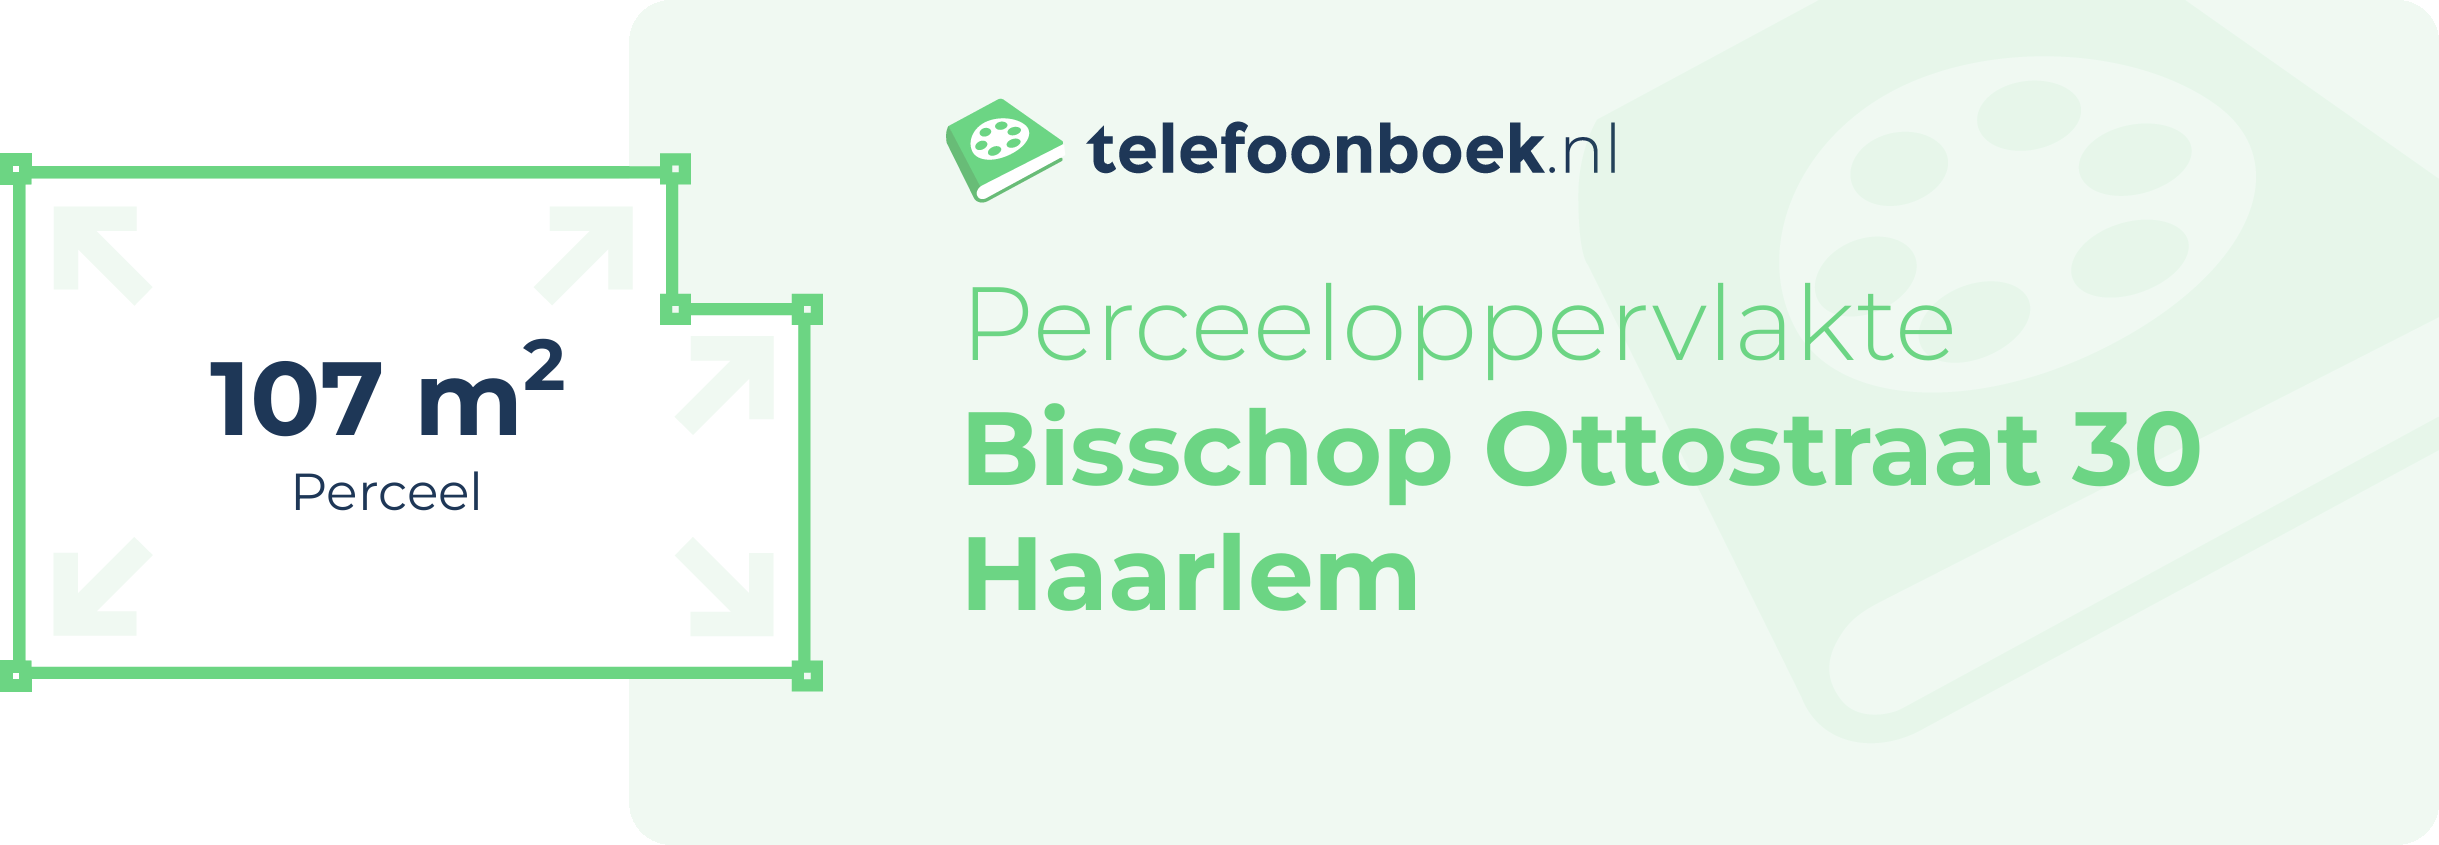 Perceeloppervlakte Bisschop Ottostraat 30 Haarlem